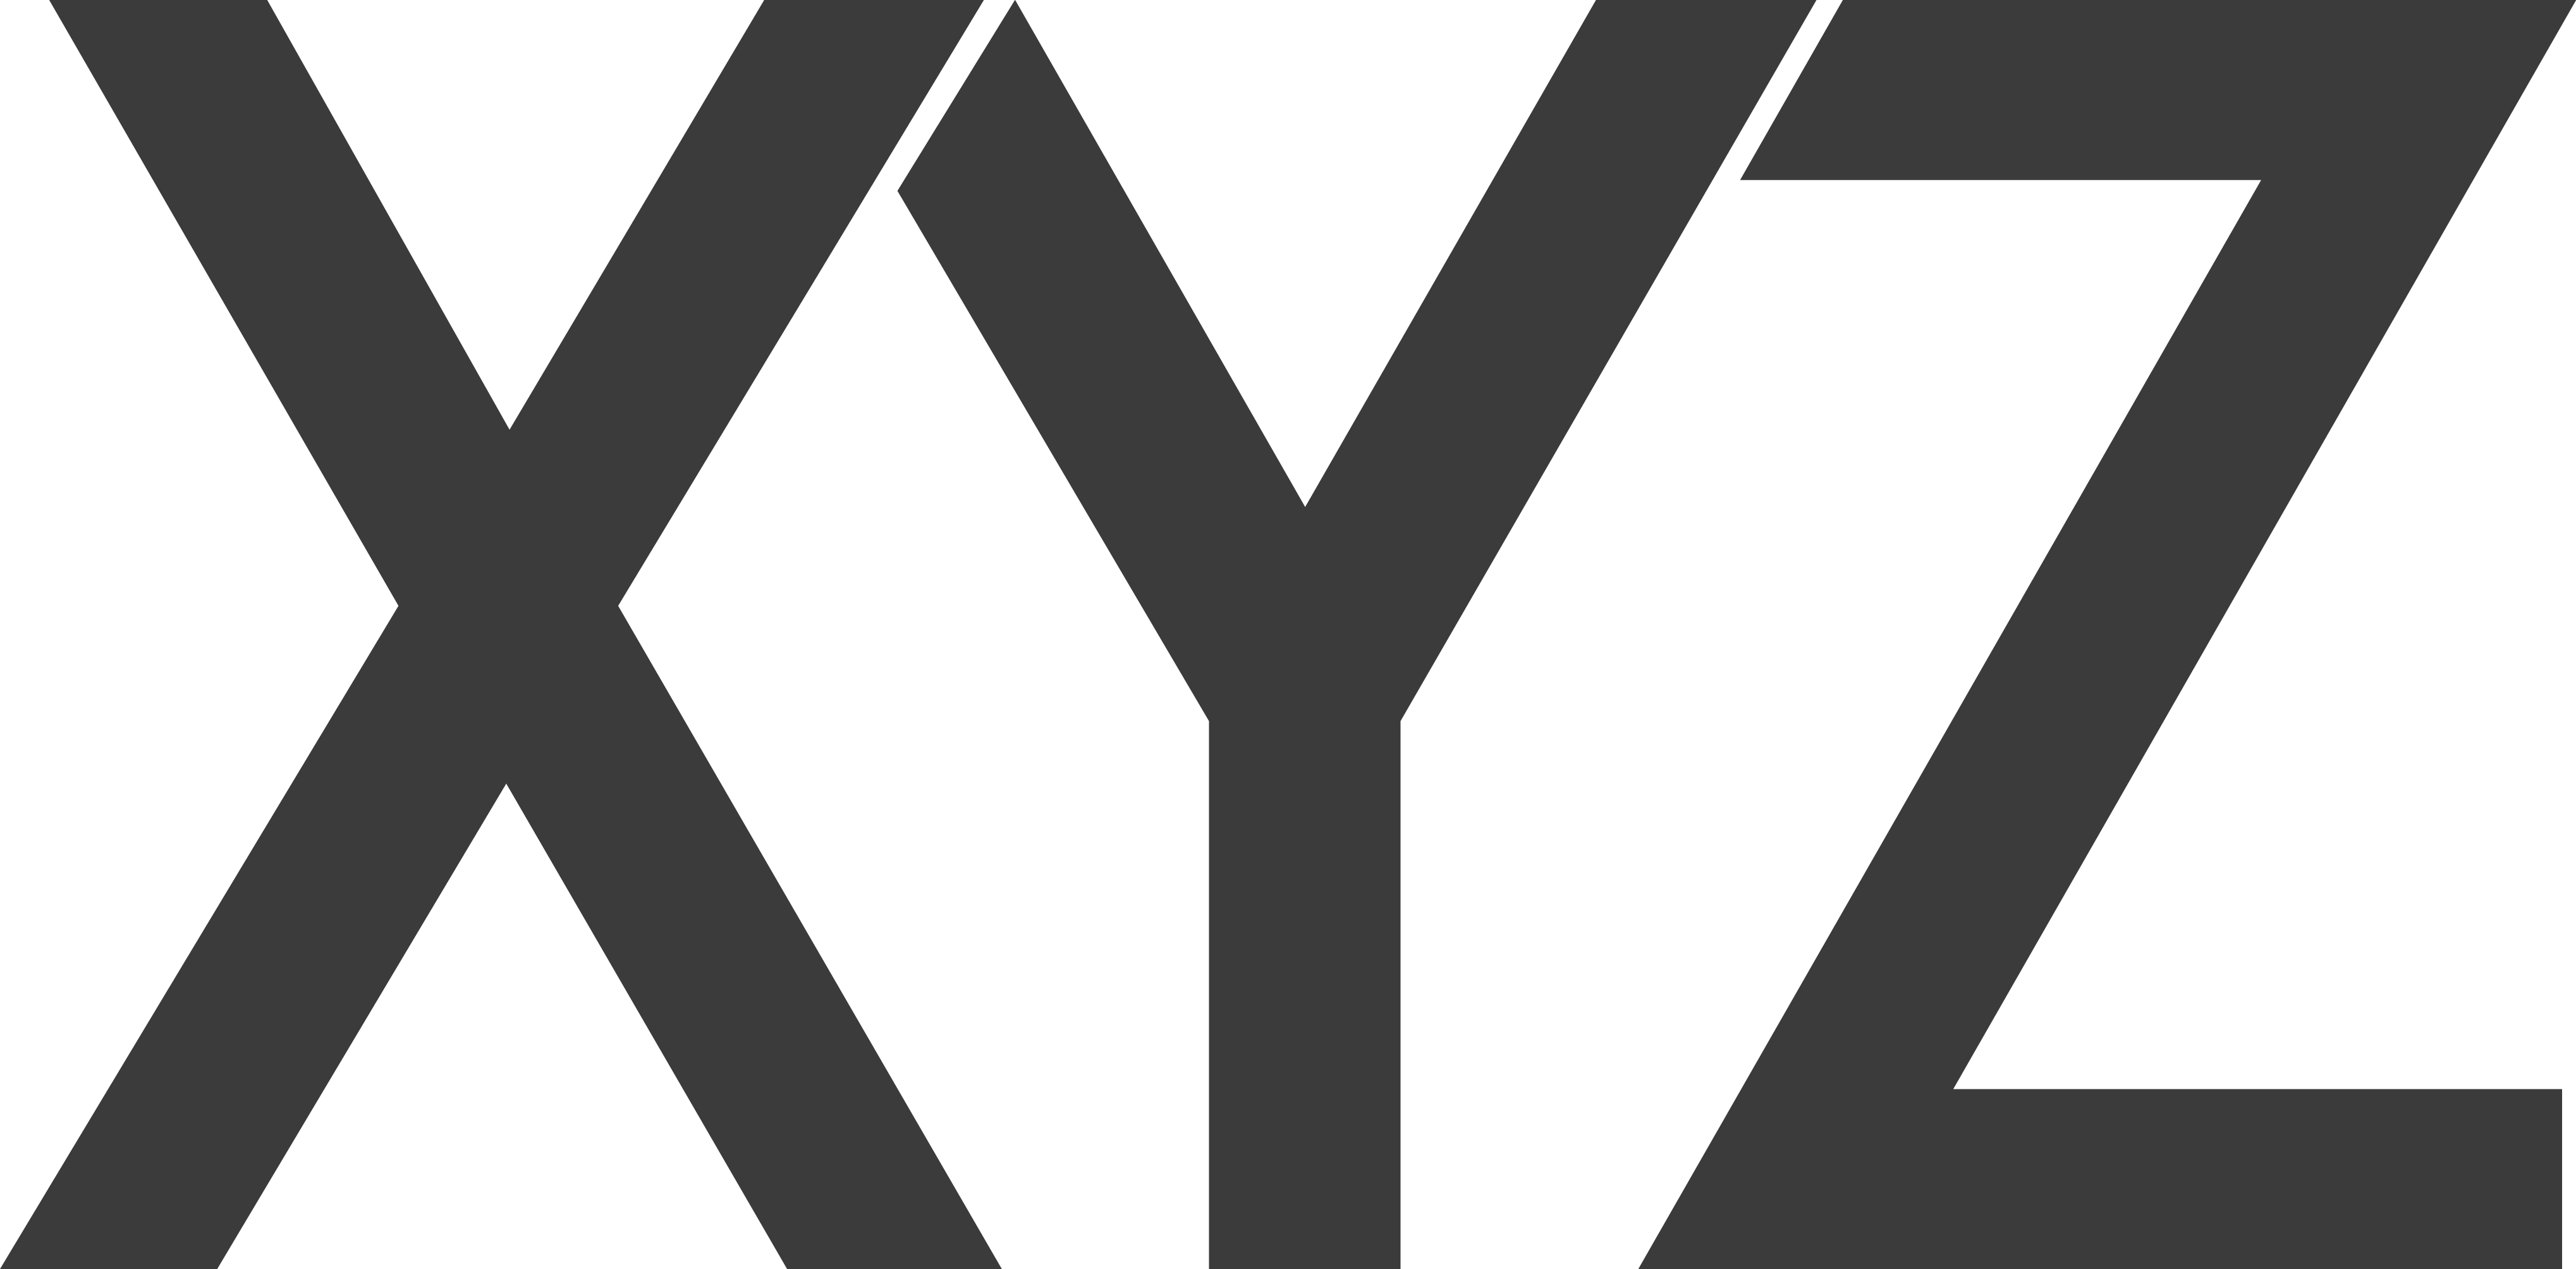 Вњљ рџ е рџ. Логотип x. Эмблема Зет. Логотип с буквой x. Xyz логотип.